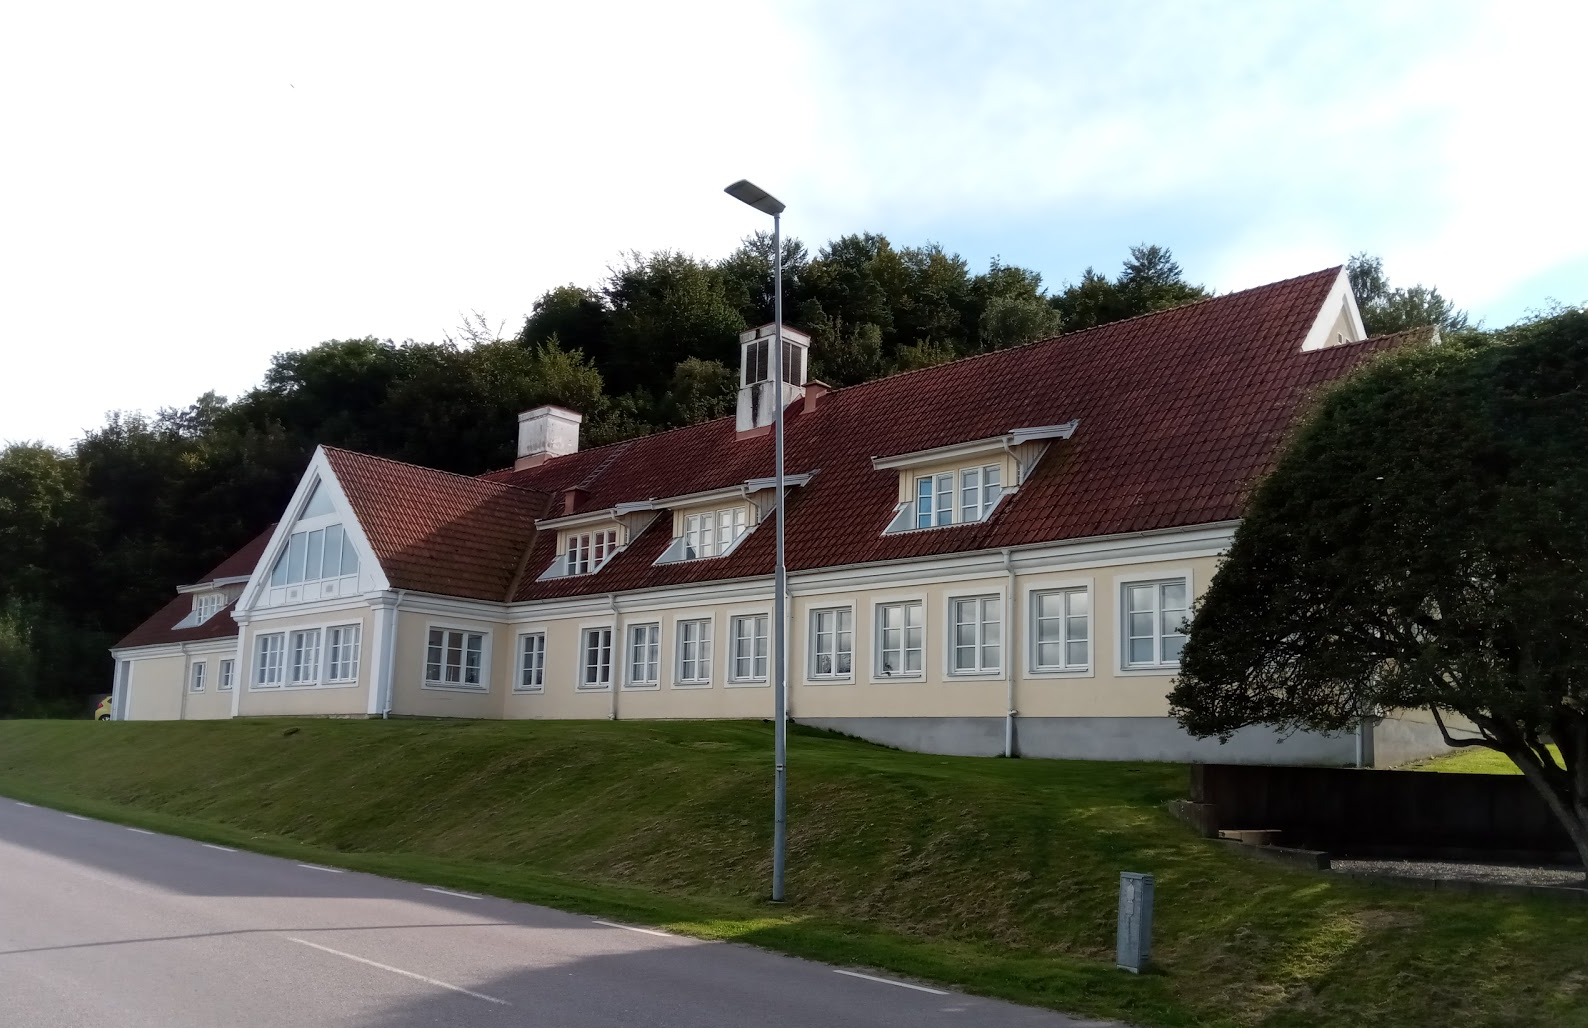 Apelrydsskolan i Båstad